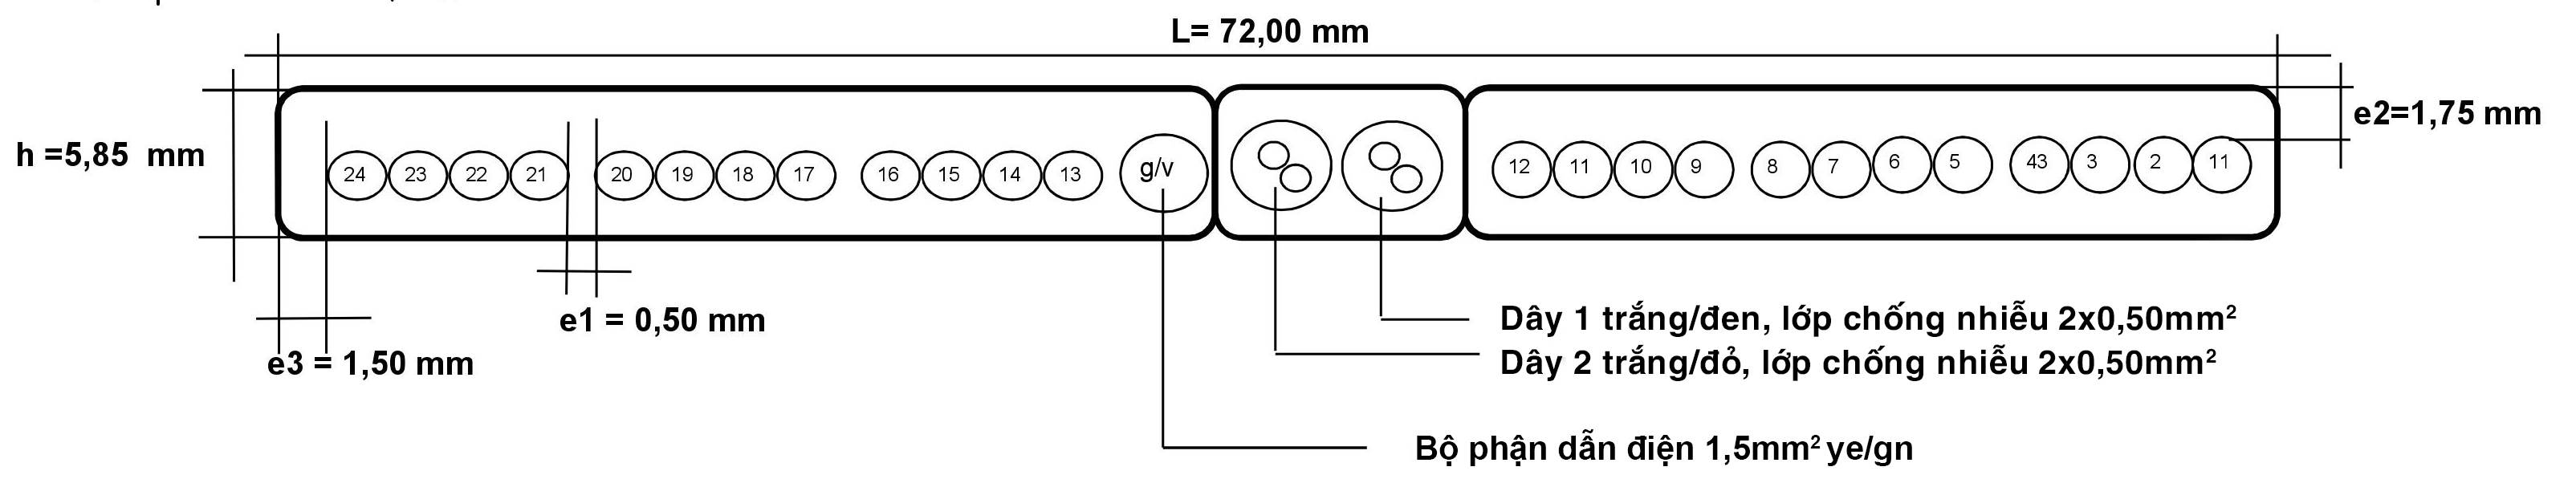 Cáp điện chống nhiễu 24 x 0,75 + 1,5 G/V +2x(2X0,50screened)